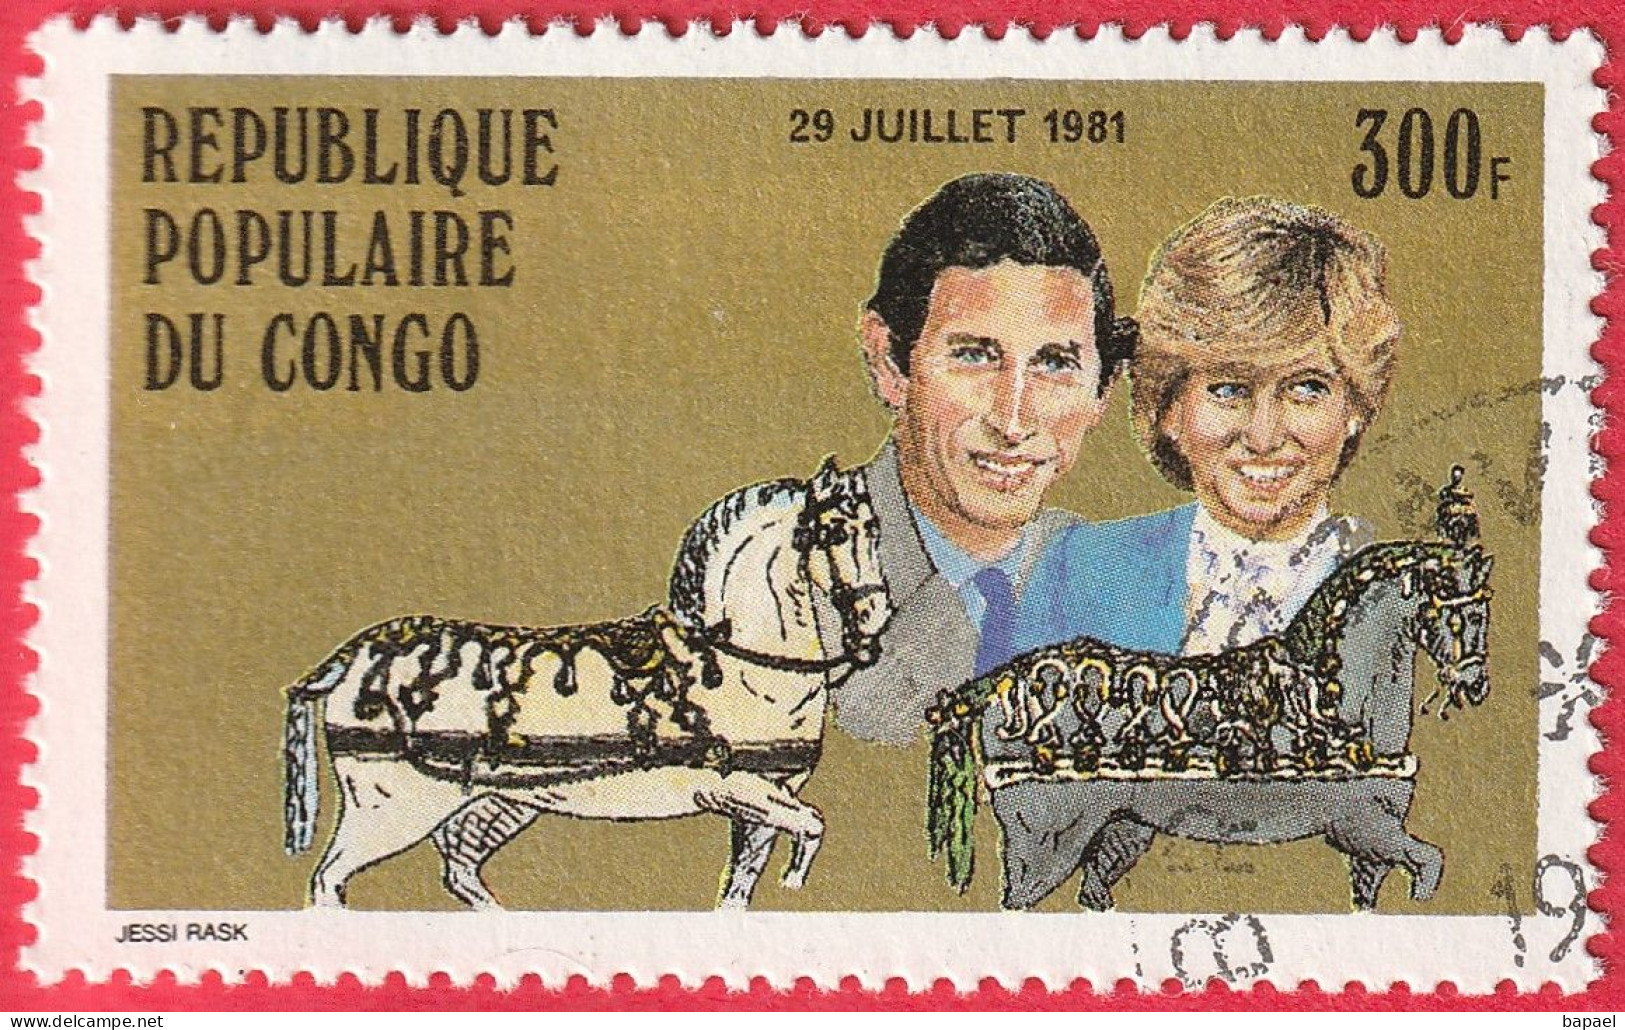 N° Yvert & Tellier 639 - Rép. Du Congo (1981) (Oblitéré) - Mariage Royal Du Prince Charles Et De Lady Diana Spencer - Oblitérés